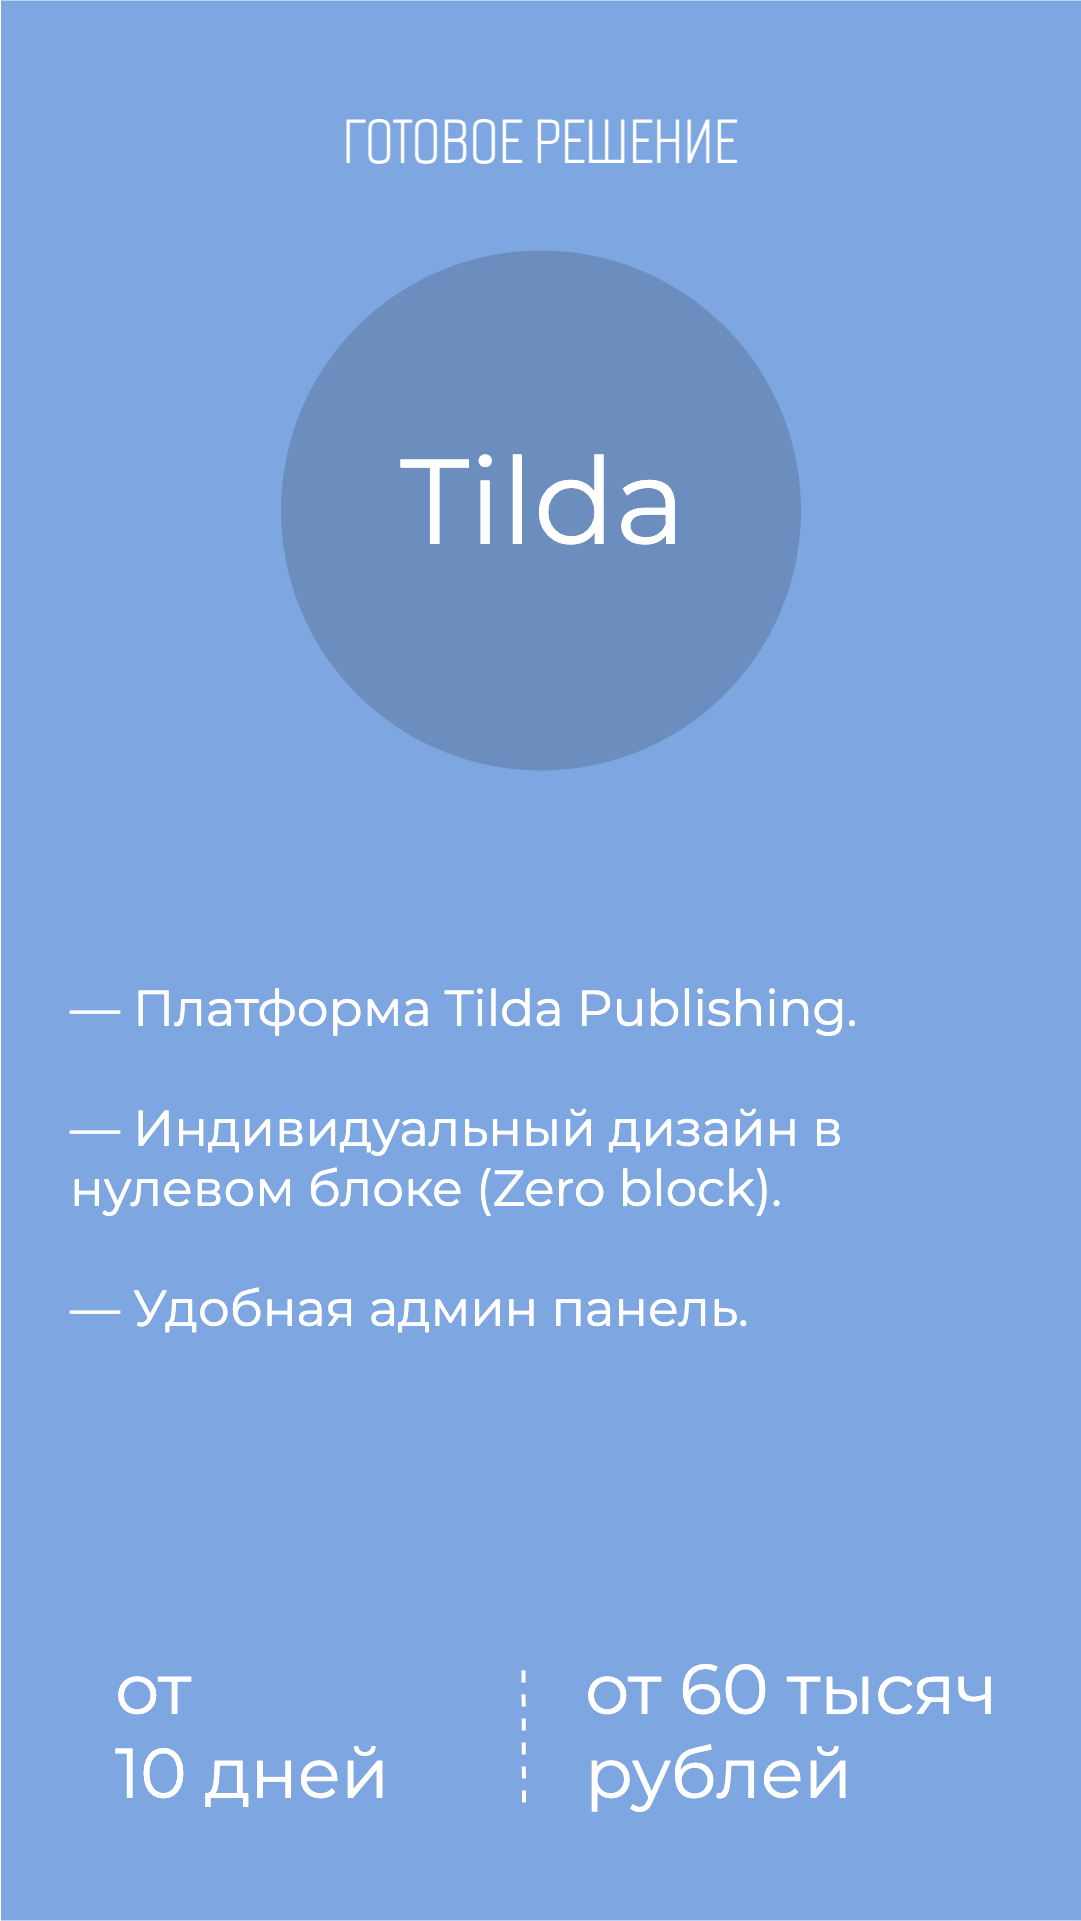 Сколько стоит создание сайта компании на Tilda